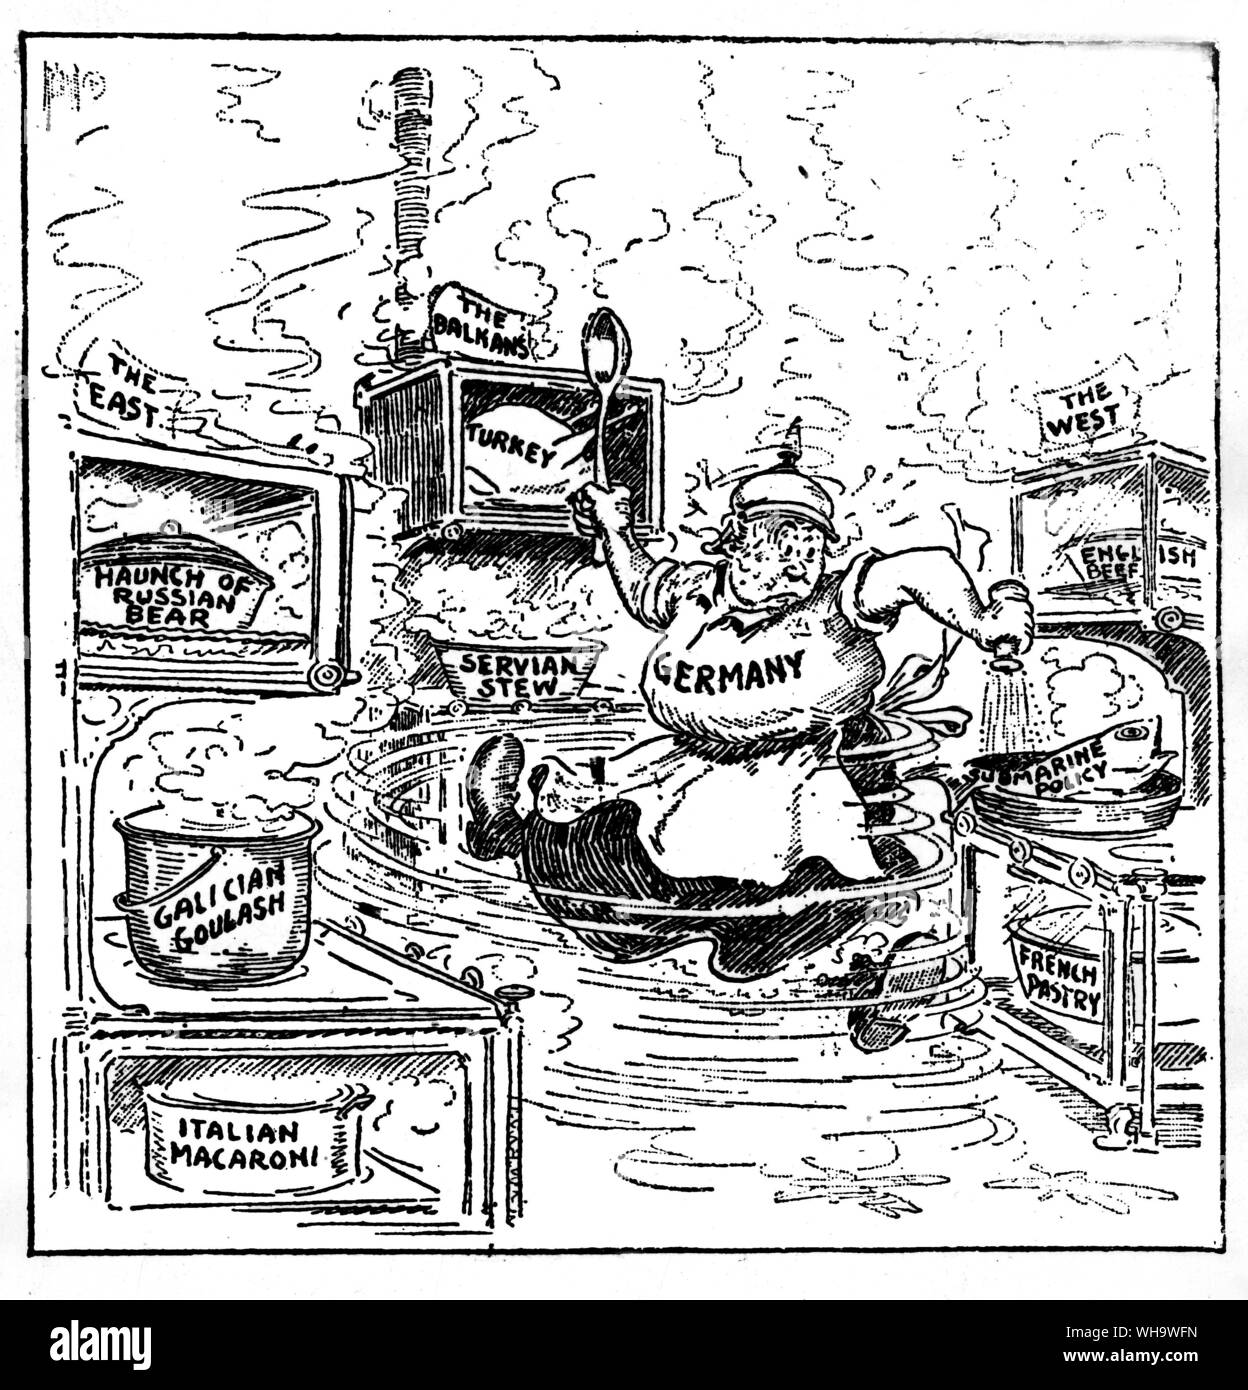 WW1/ caricatura muestra el incumplimiento por parte de Alemania de no golpear al oeste y luego complir gto east, pero fue completamente enredada. Foto de stock